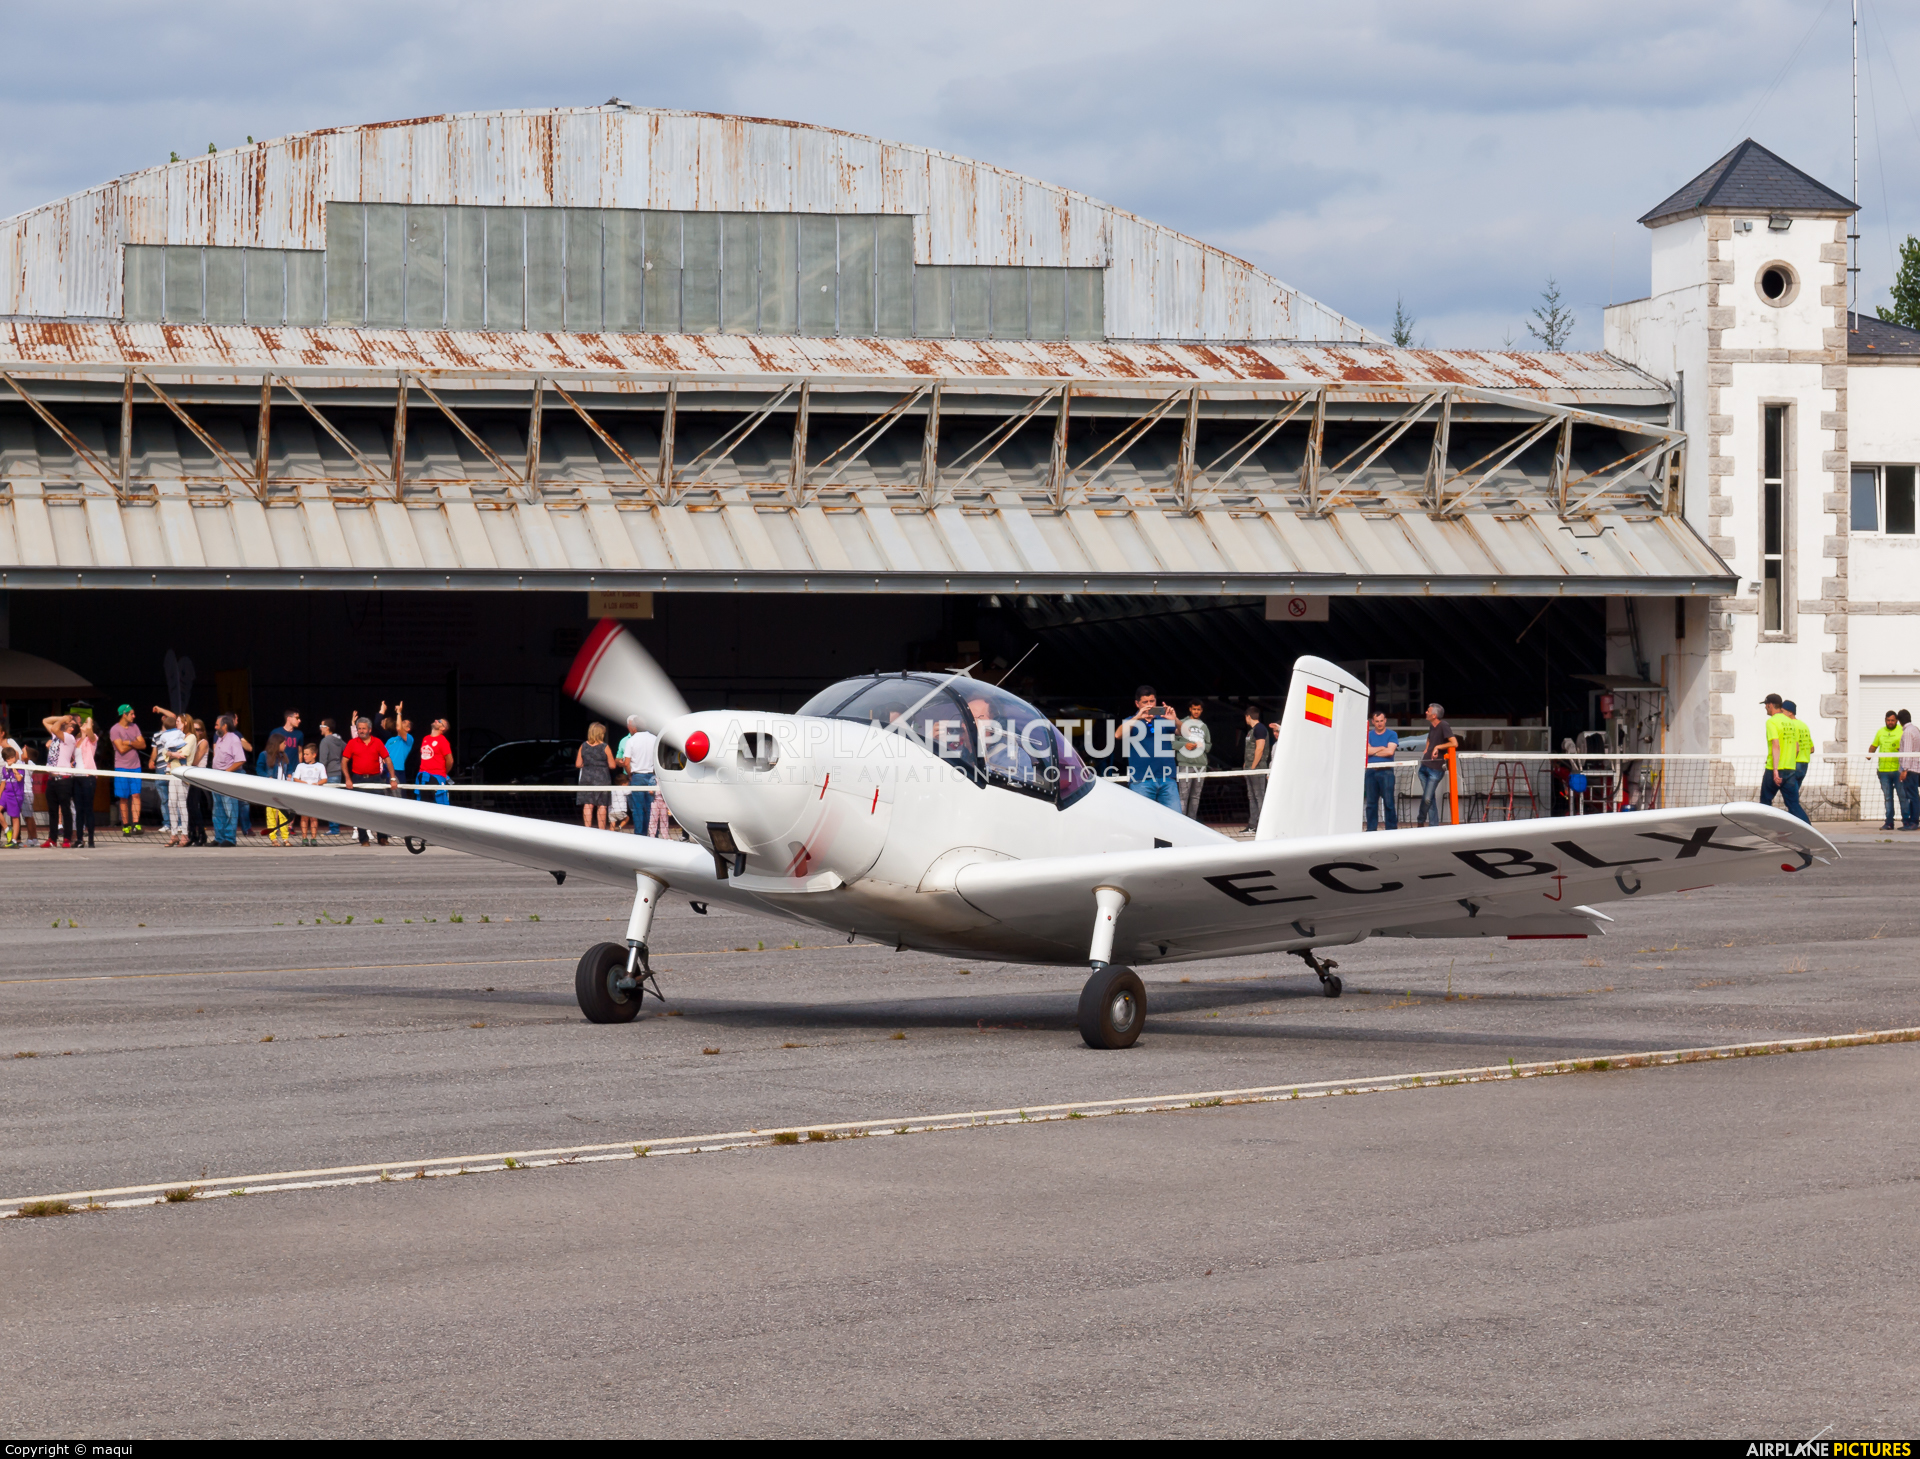 Real Aero Club de España EC-BLX aircraft at Lugo - Rozas